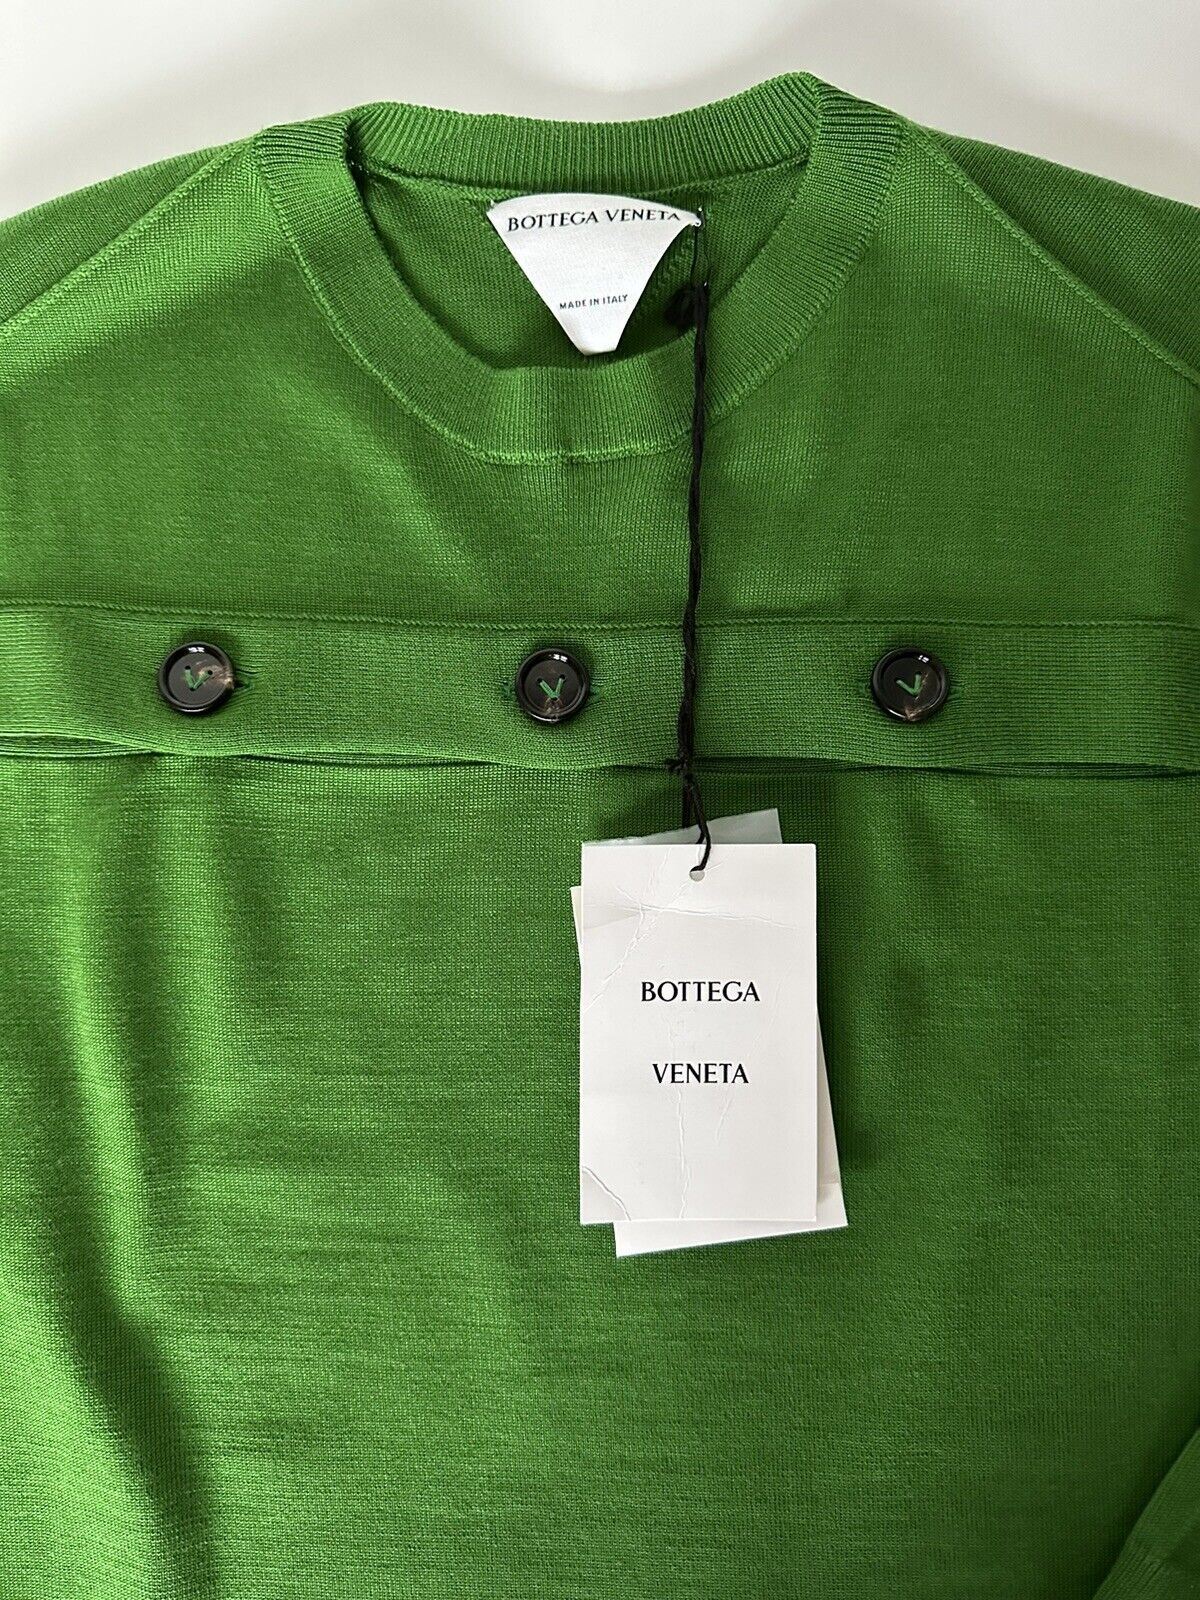 Женский зеленый шерстяной вязаный топ с открытыми пуговицами Bottega Veneta, большой размер, 648729, NWT 1750 долларов США